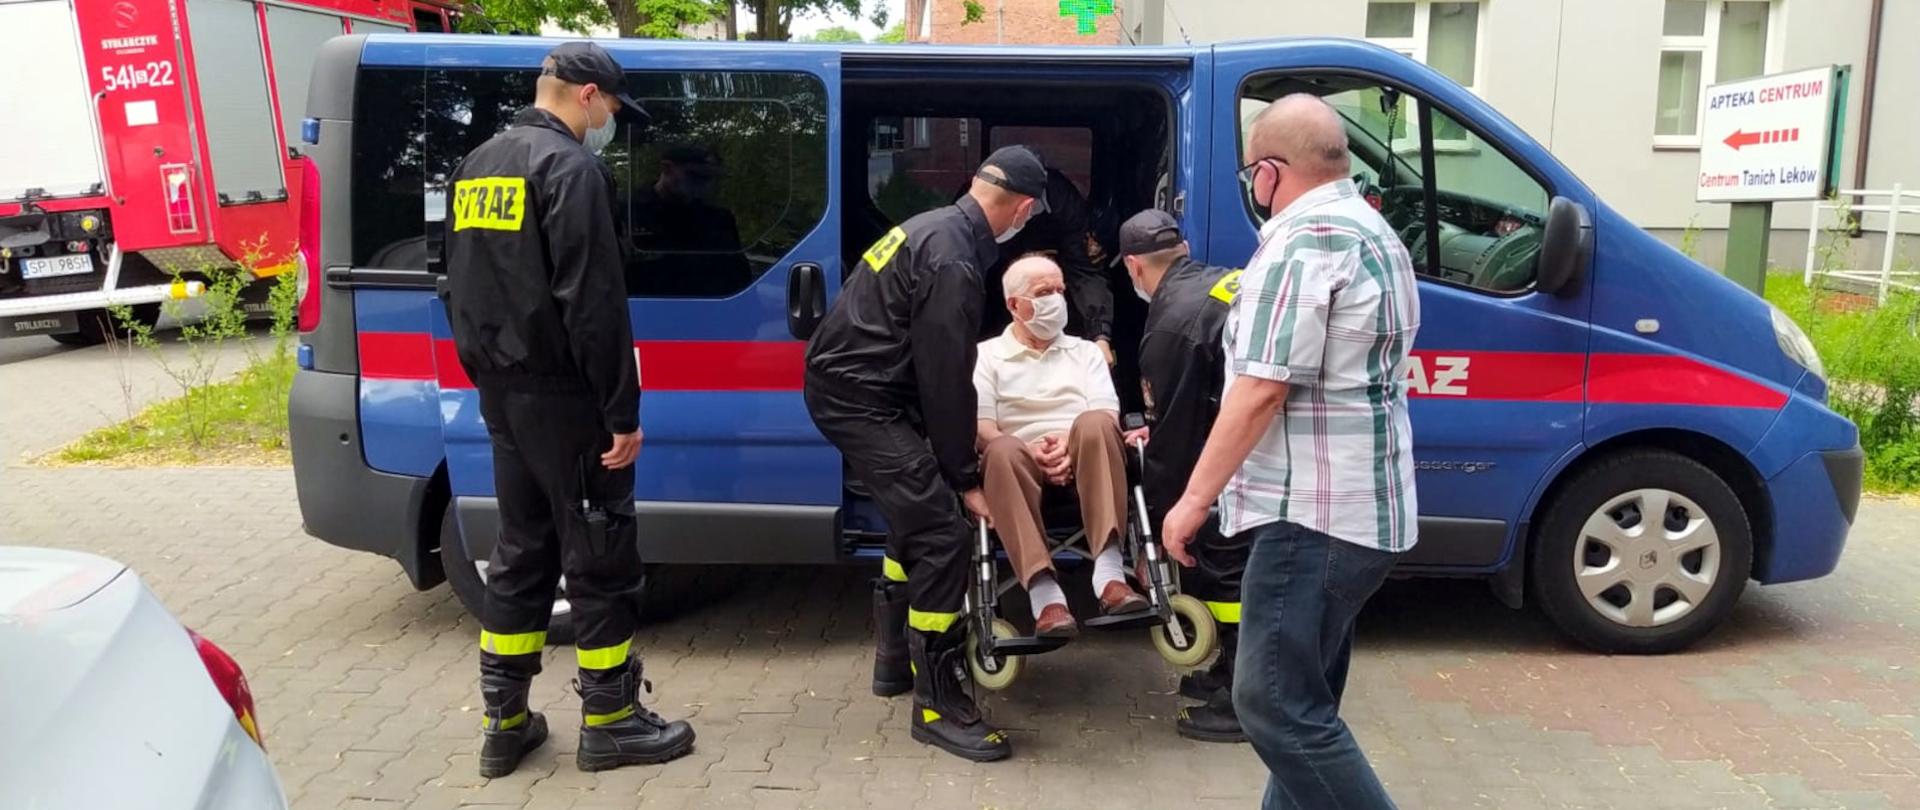 Zdjęcie przedstawia czterech strażaków pomagających osobie na wózku inwalidzkim udać się na szczepienie przeciwko Covid-19.